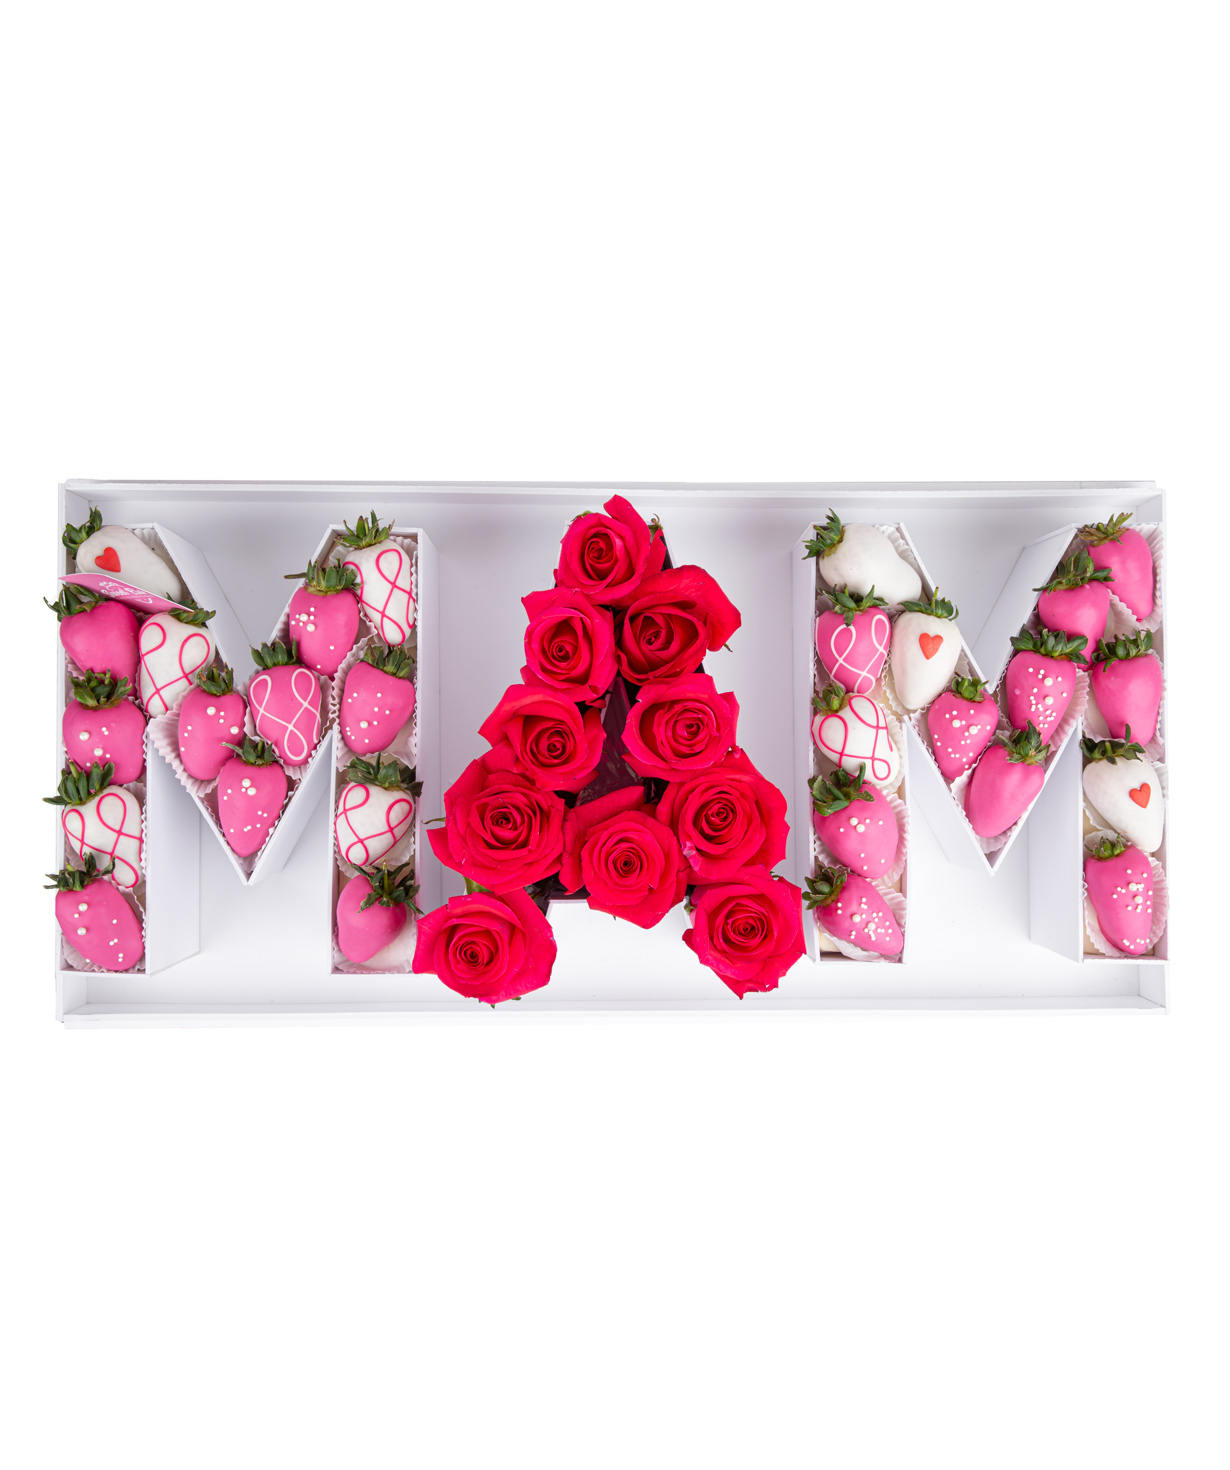 Նվեր-տուփ «Sweet Elak» վարդերով և շոկոլադապատ ելակներով